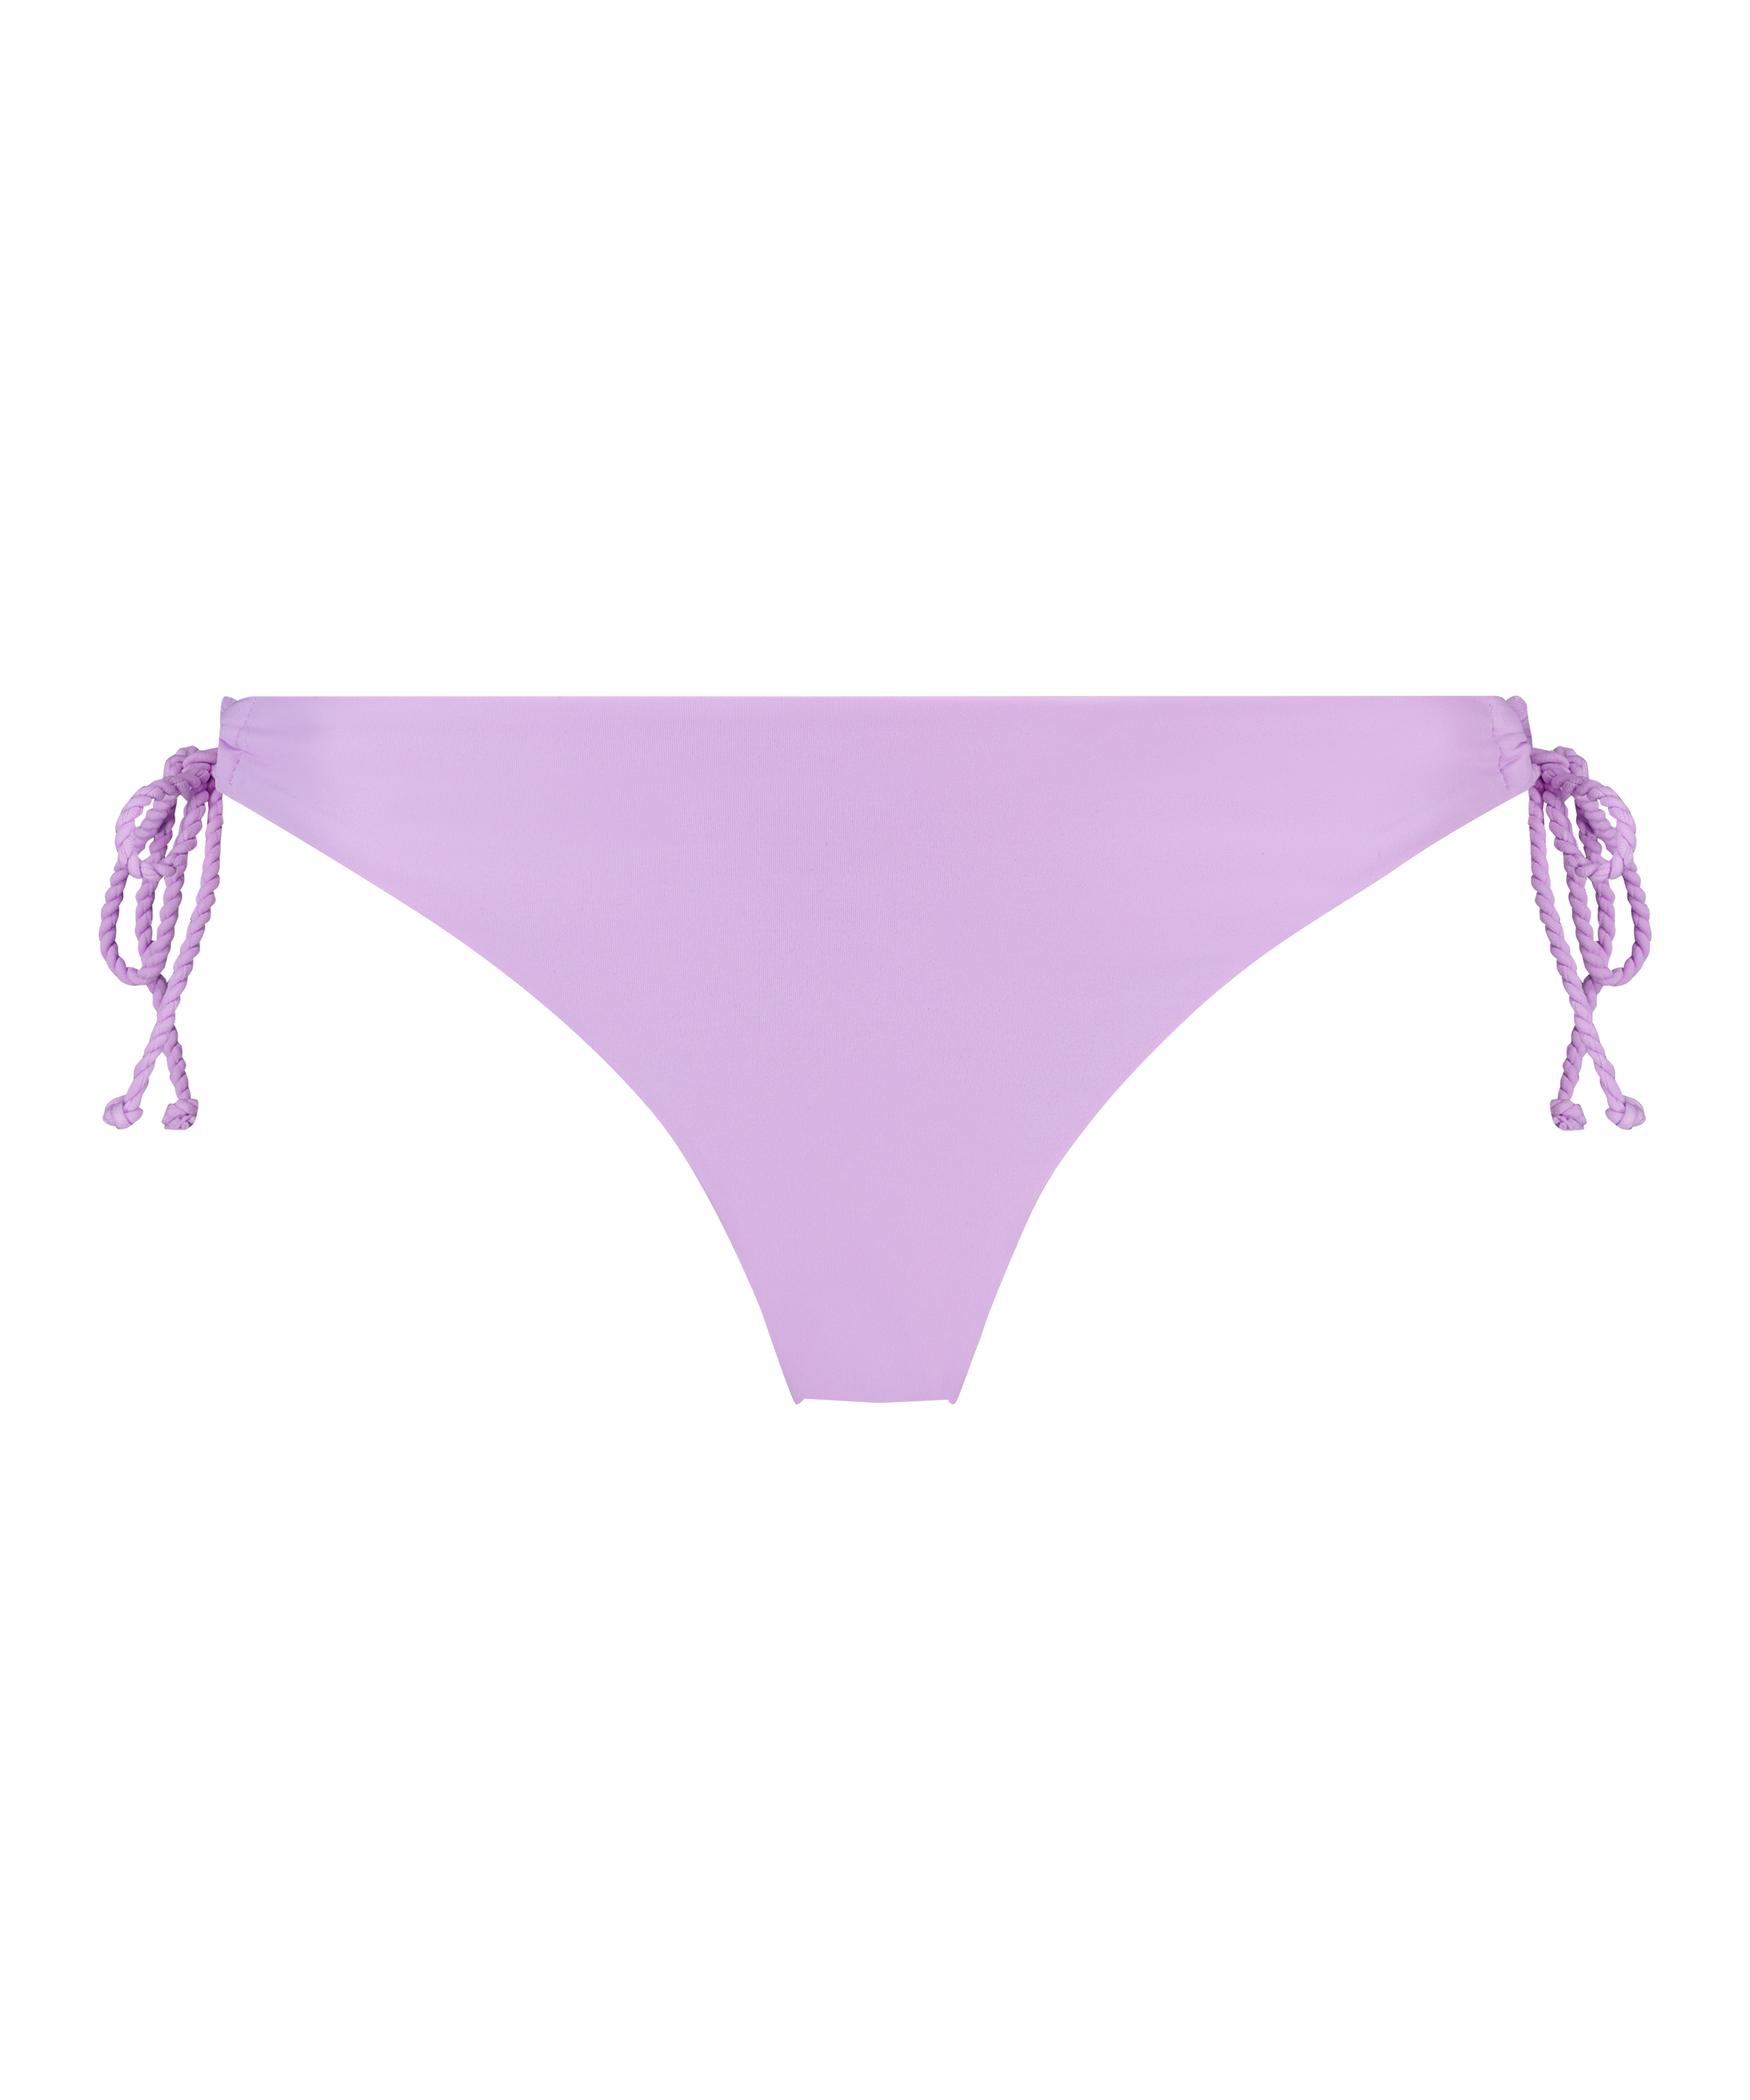 Wakaya High Leg Bikini Bottoms, Purple, main